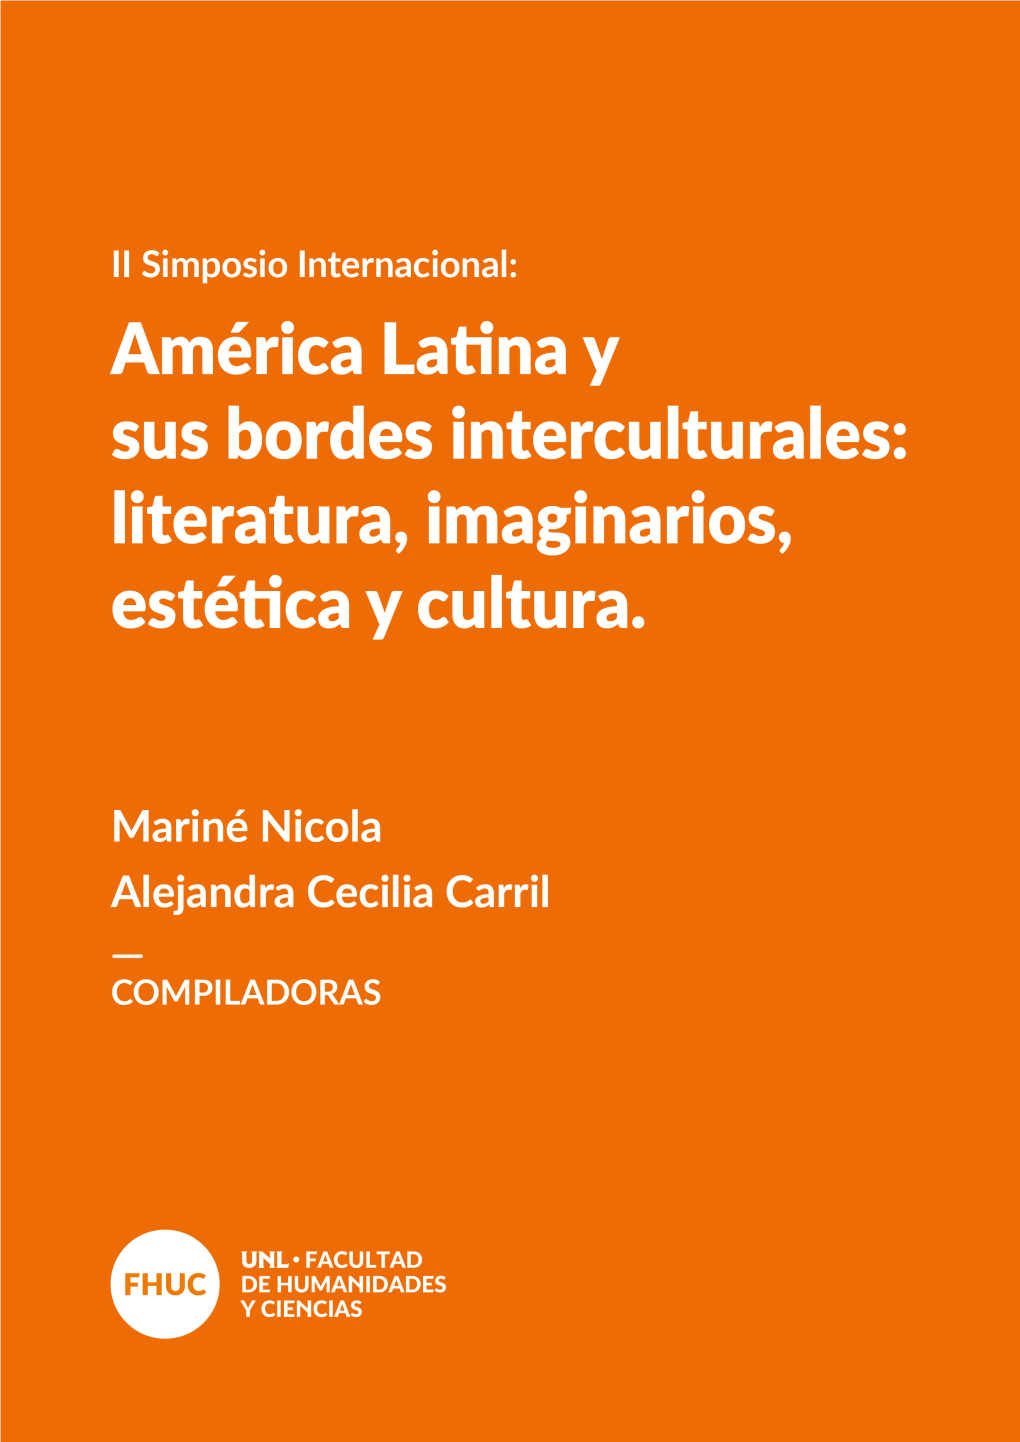 II Simposio Internacional: América Latina Y Sus Bordes Interculturales: Literatura, Imaginarios, Estética Y Cultura